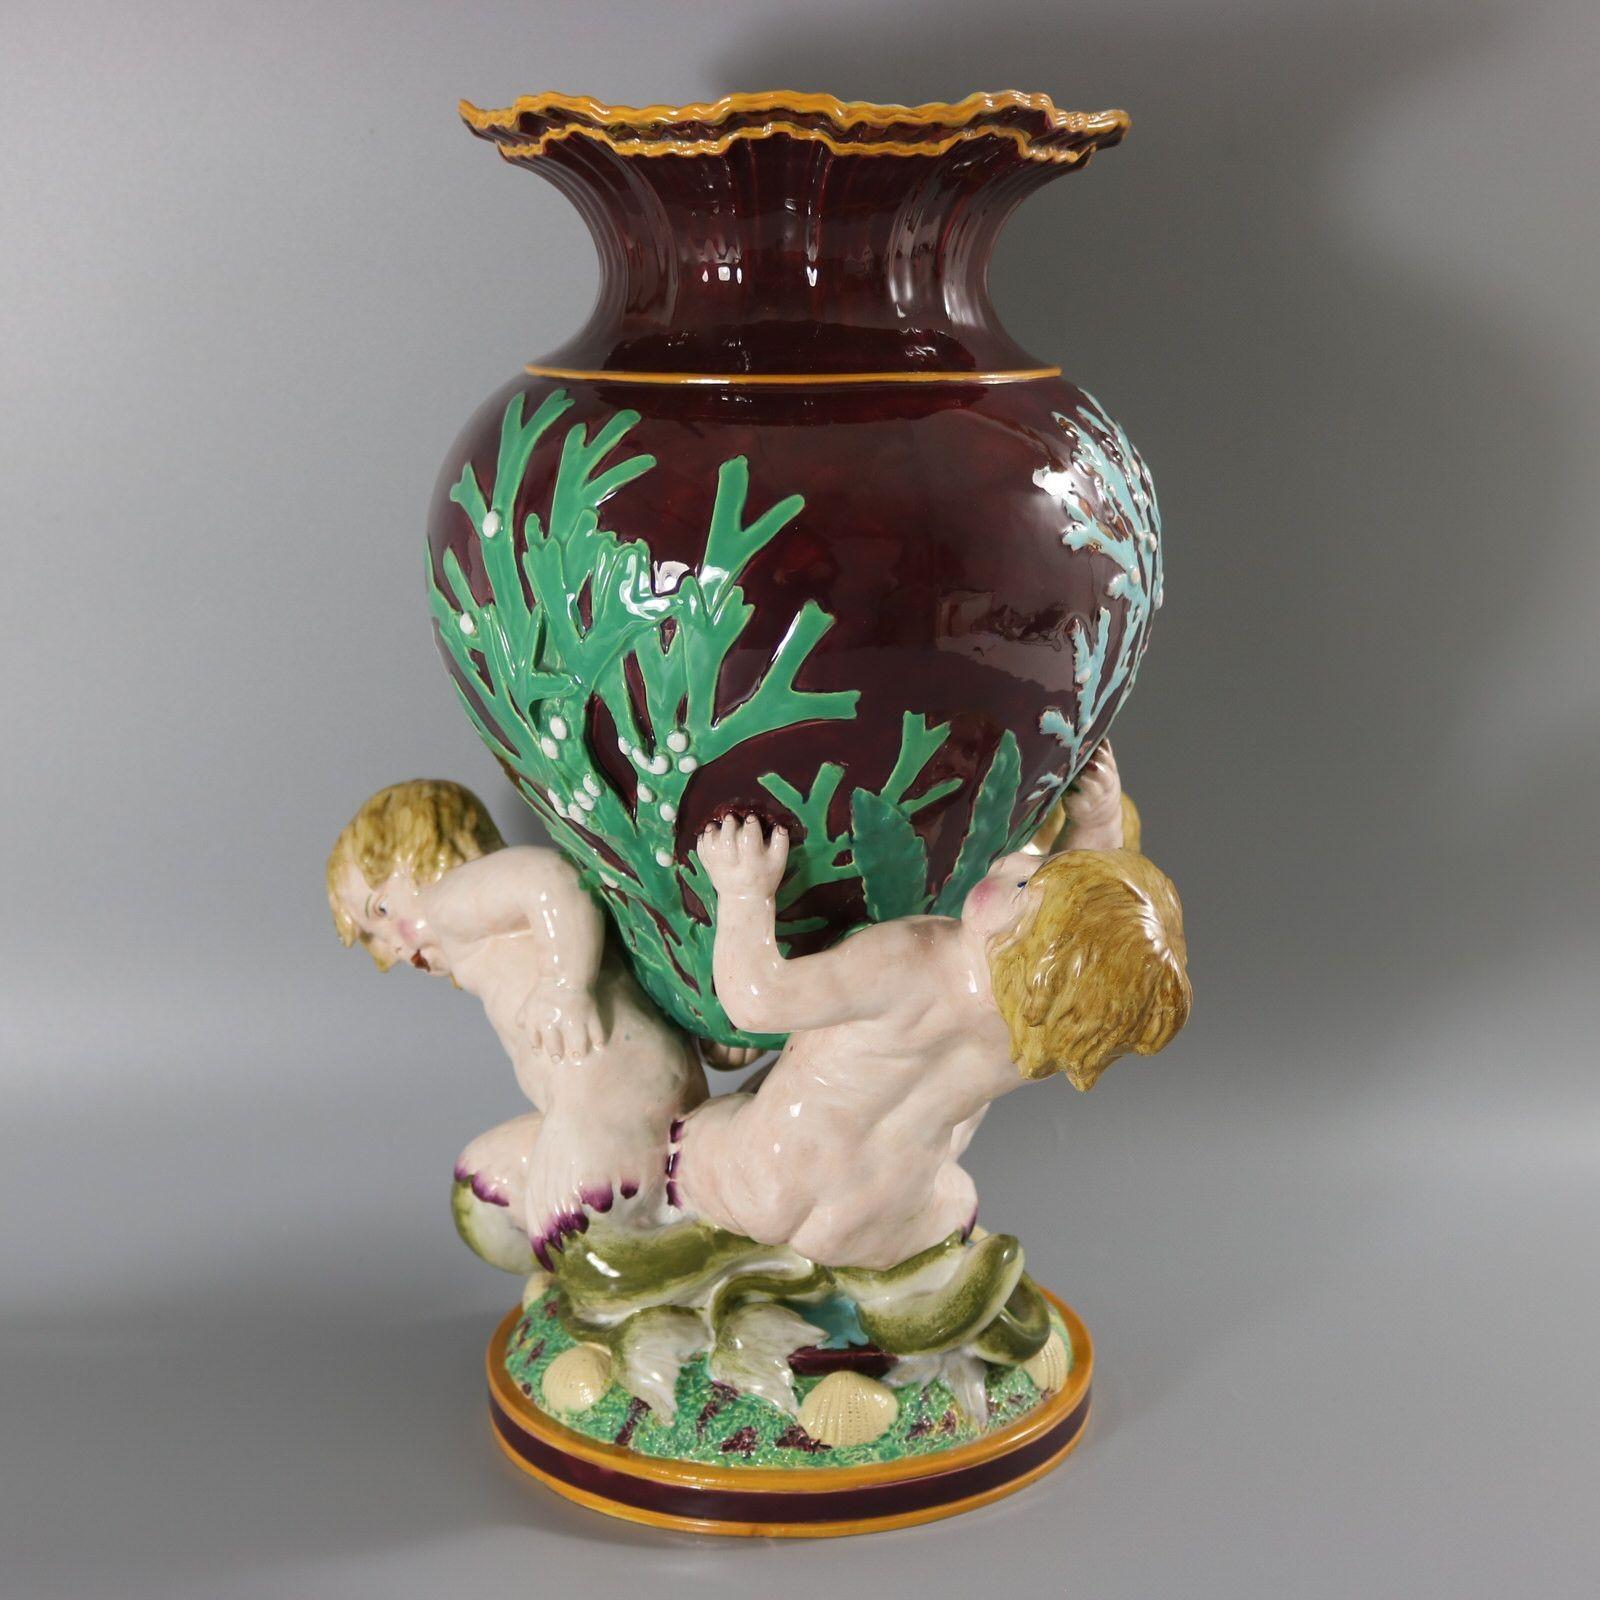 Minton-Majolika-Vase mit drei Seefahrern, die ein mit Algen geschmücktes Gefäß tragen. Der Rand der Vase ist so modelliert, dass er brechende Wellen darstellt. Dunkelkastanienbraune Grundversion. Färbung: dunkel kastanienbraun, grün, rosa, sind